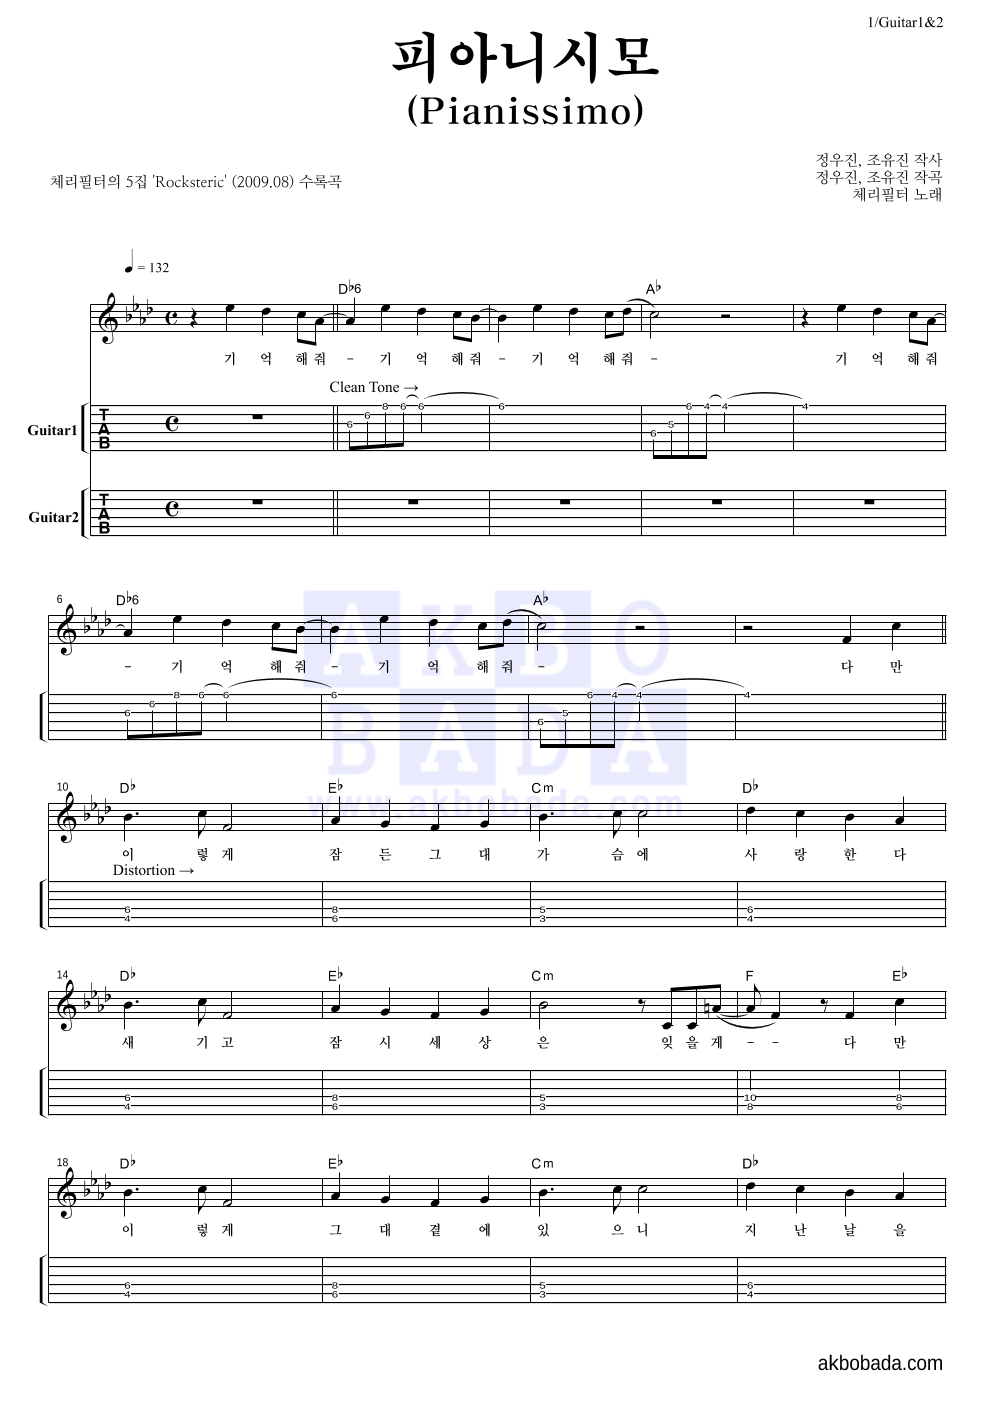 체리필터 - 피아니시모 (Pianissimo) 기타(Tab) 악보 